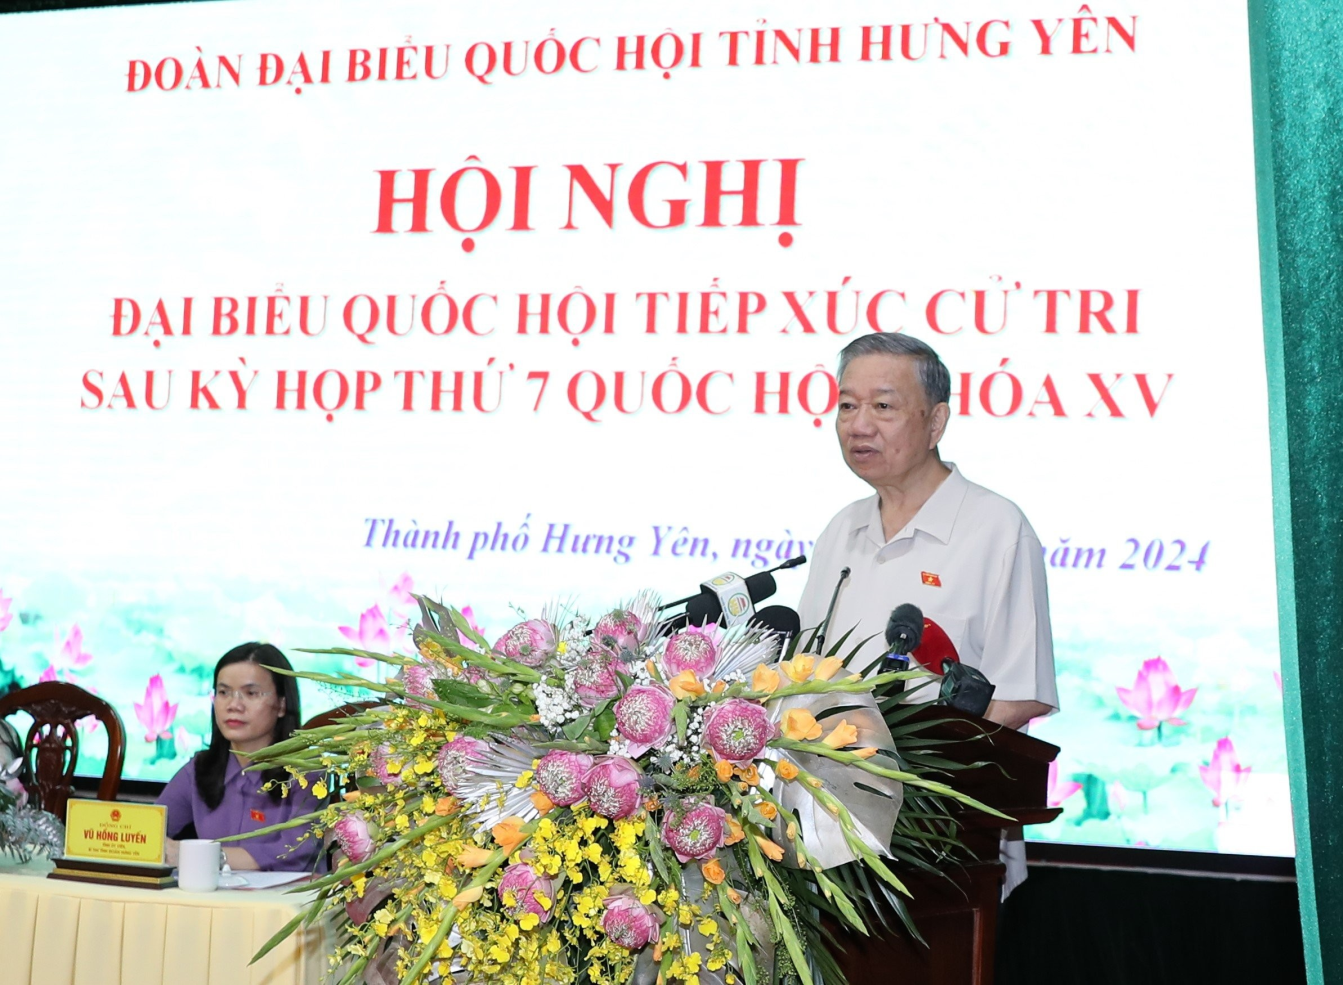 Chủ tịch nước Tô Lâm cùng Đoàn đại biểu Quốc hội tỉnh tiếp xúc cử tri thành phố Hưng Yên